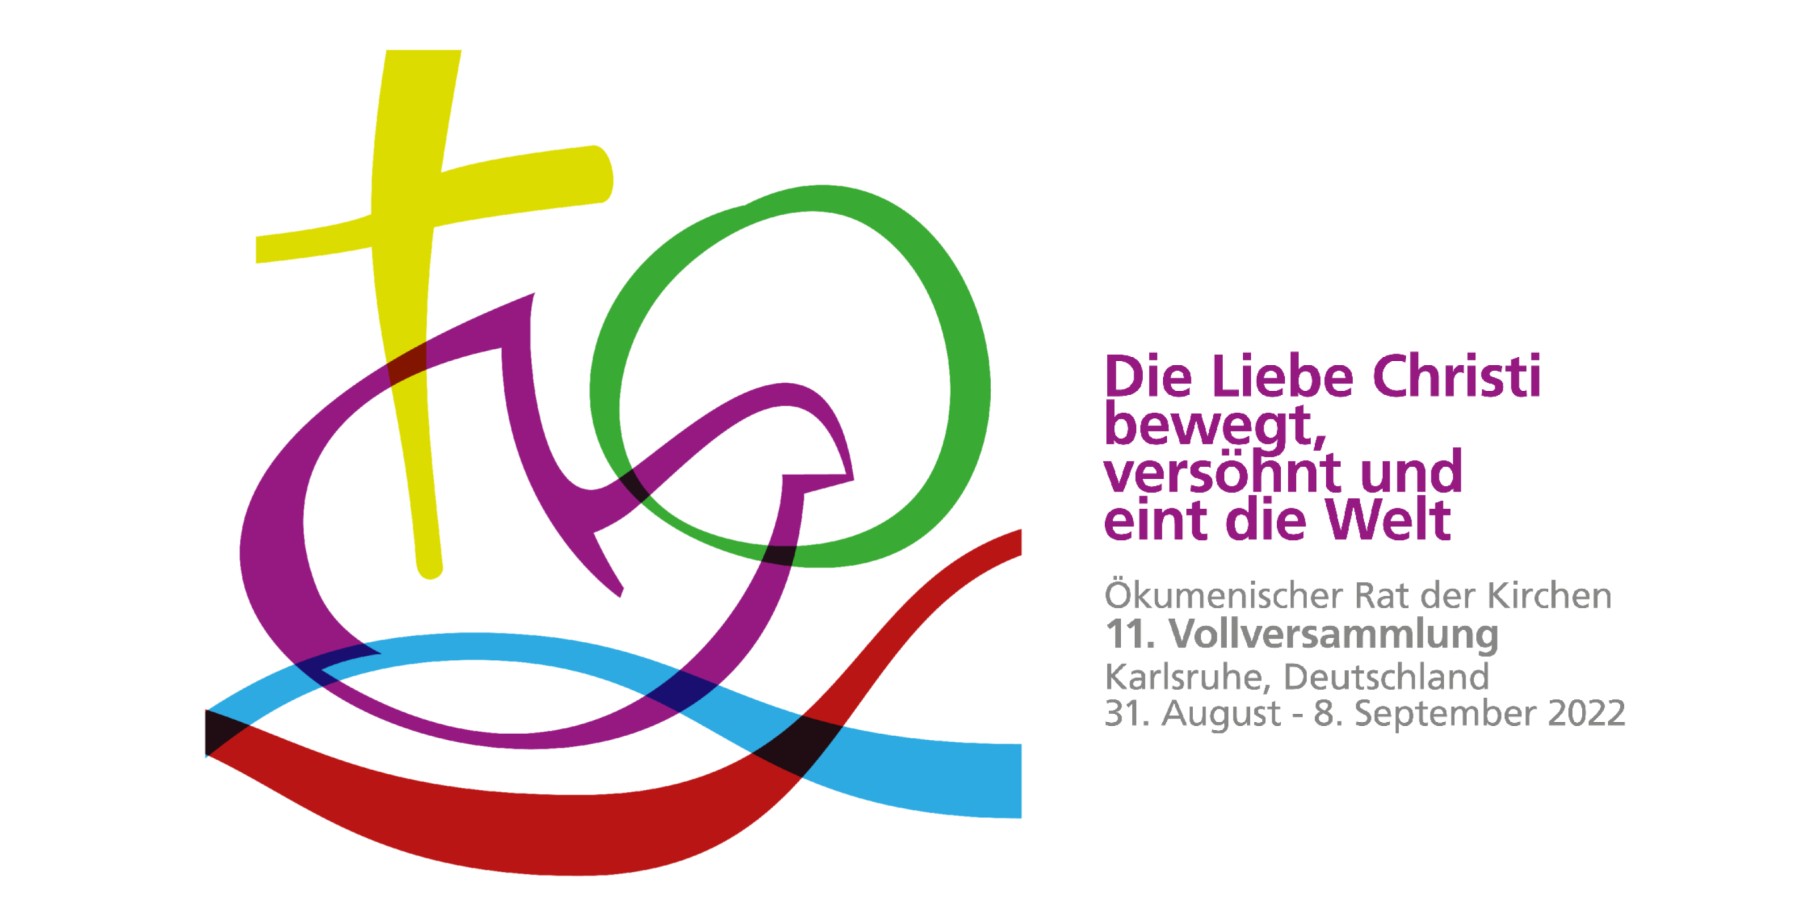 Das Symbol der Vollversammlung des ÖRK im September 2022 in Karlsruhe (Quelle: www.oikoumene.org)